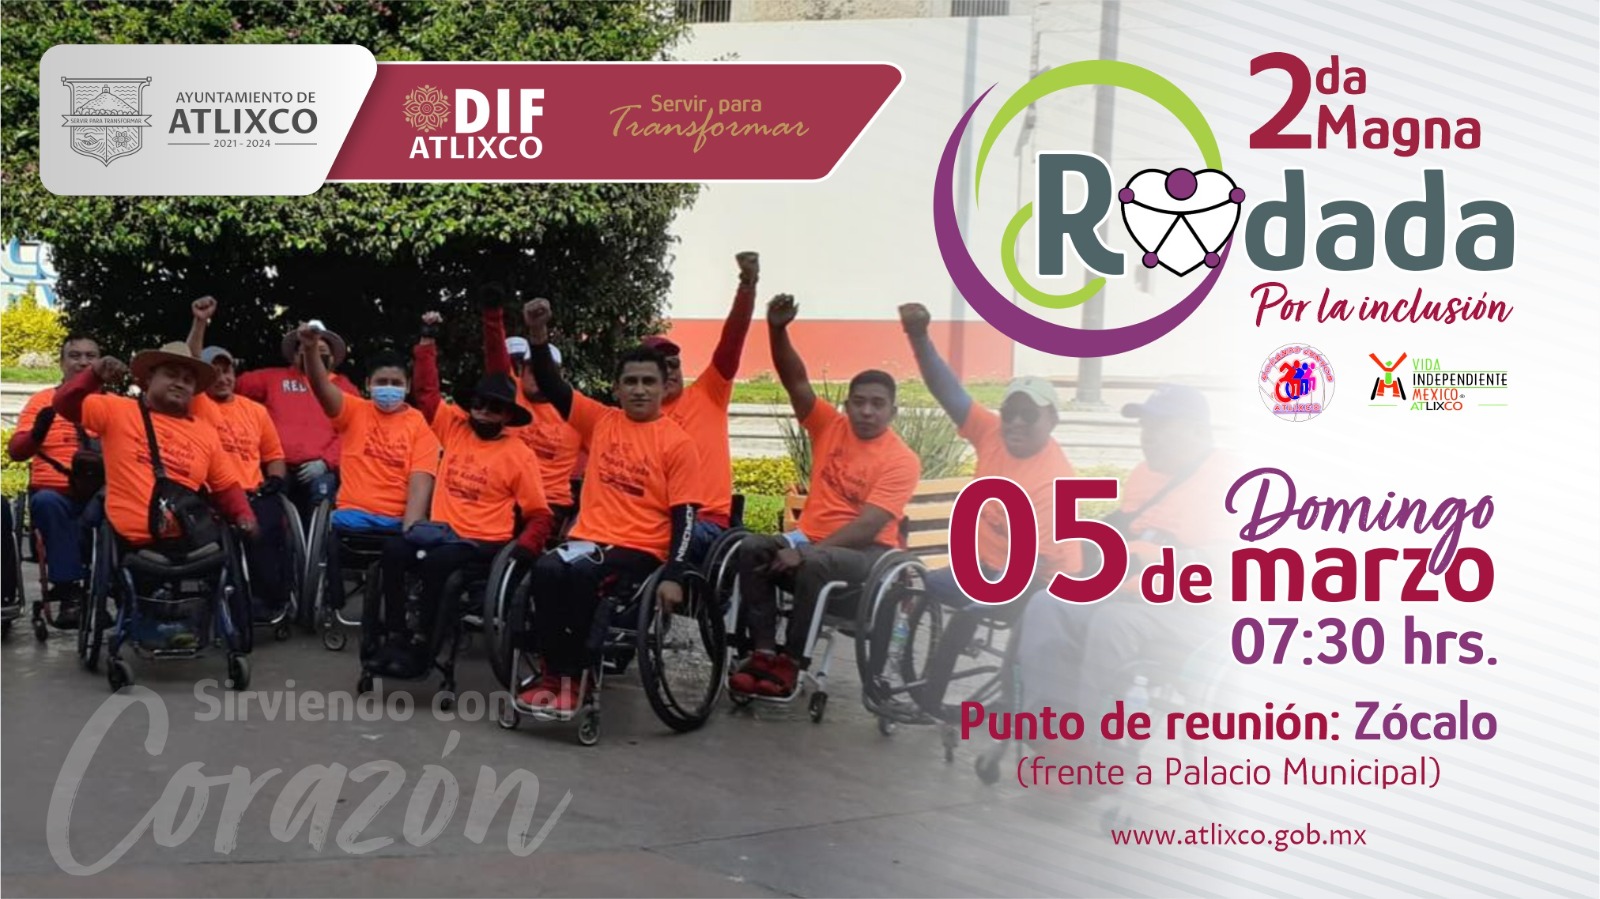 Segunda magna Rodada por la inclusión busca concientizar y apoyar el Movimiento para Personas con Discapacidad en Atlixco